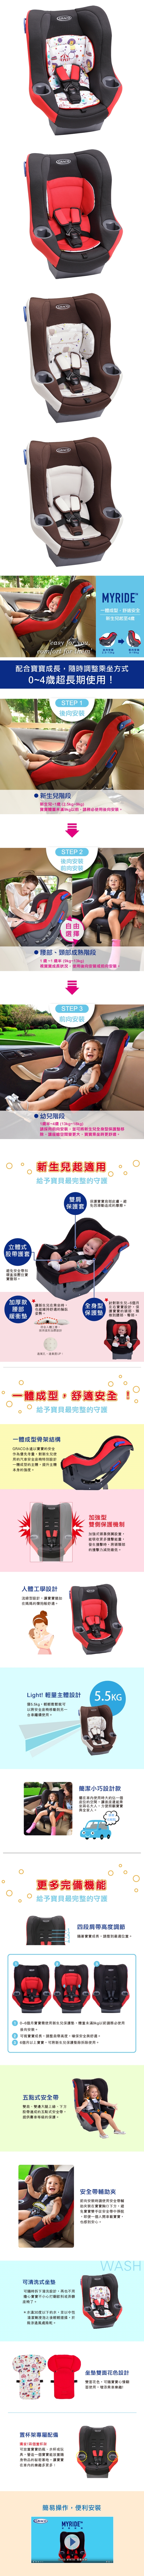 GRACO-0~4歲前後向嬰幼兒汽車安全座椅MYRIDE™(動物樂園/森林花園)